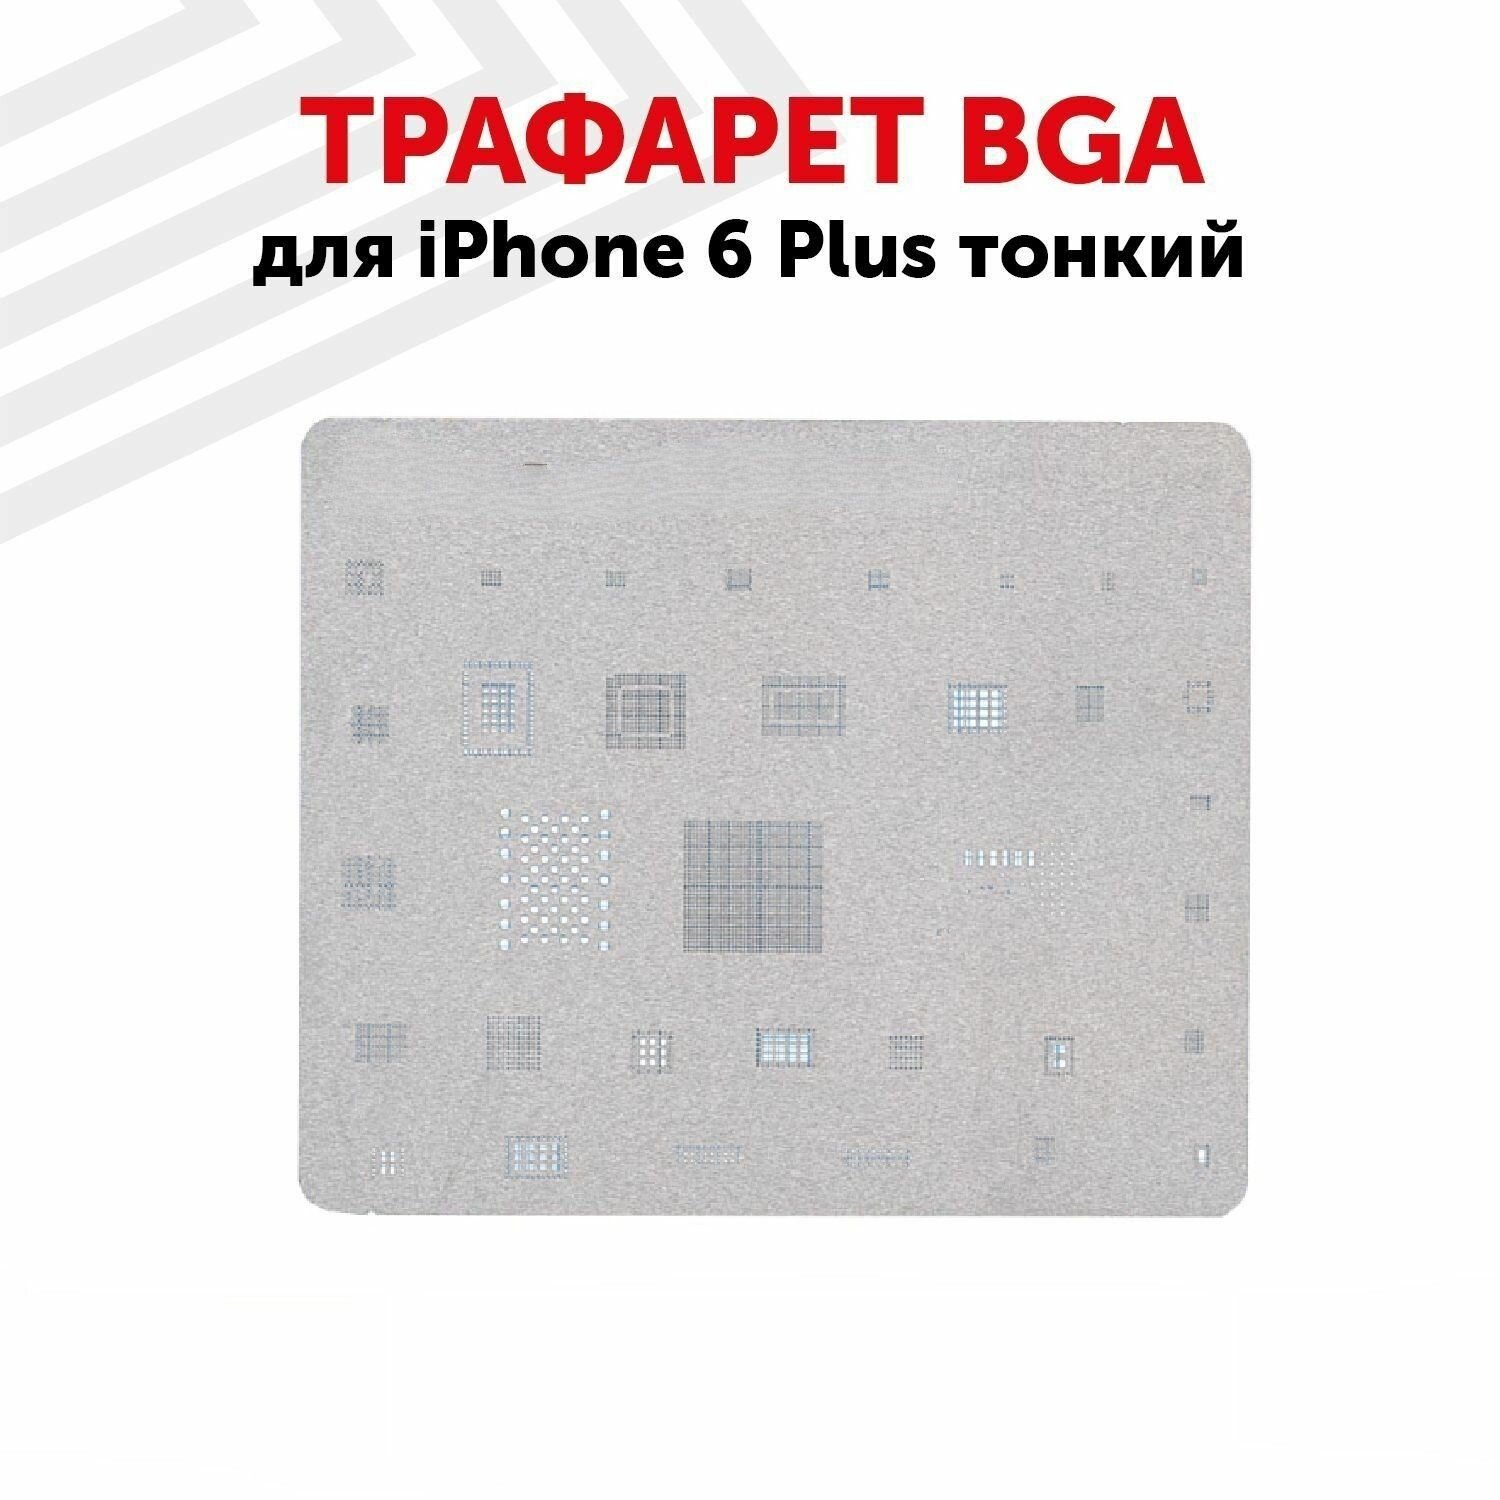 Трафарет BGA для мобильного телефона (смартфона) Apple iPhone 6 Plus тонкий